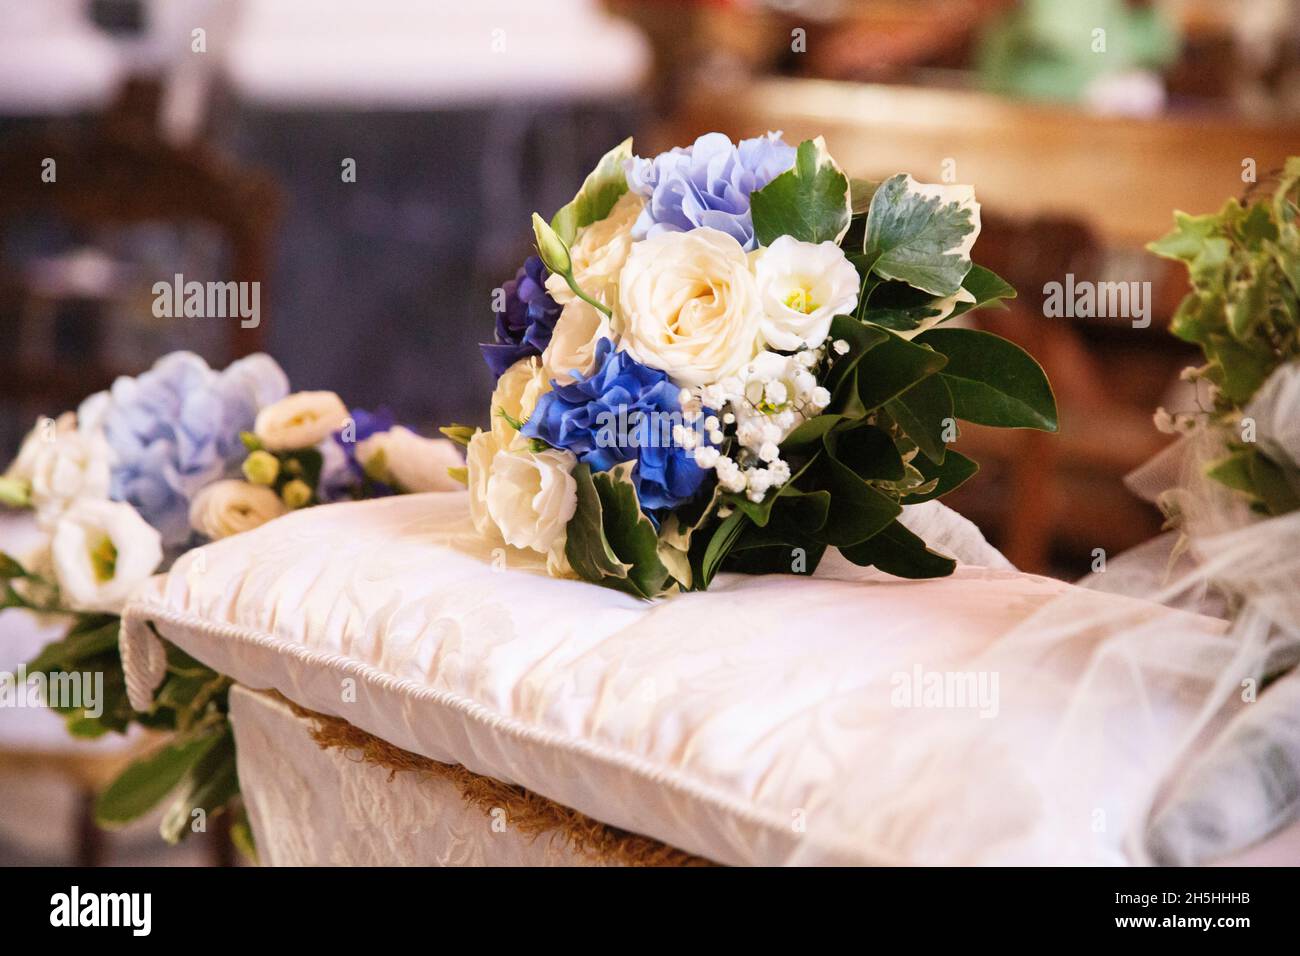 Farbenfroher Brautstrauß aus weißen und blauen Blumen, der auf Kissen über der Hochzeitsbank vor dem Kirchenaltar liegt Stockfoto